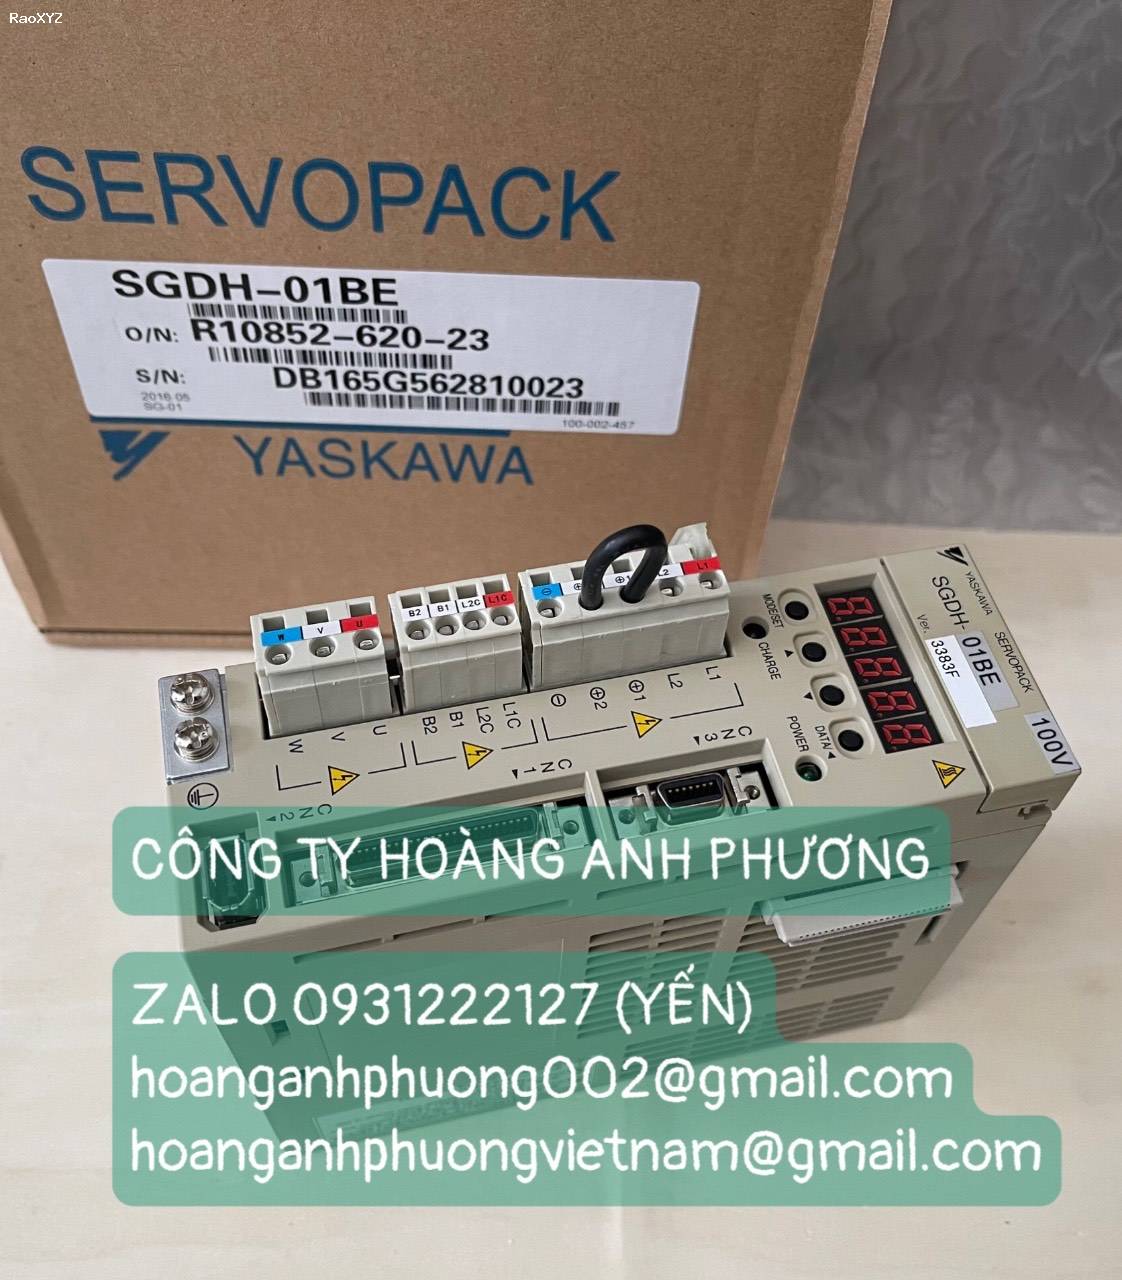 Servo pack SGDH-01BE Yaskawa - Giá bán siêu tốt